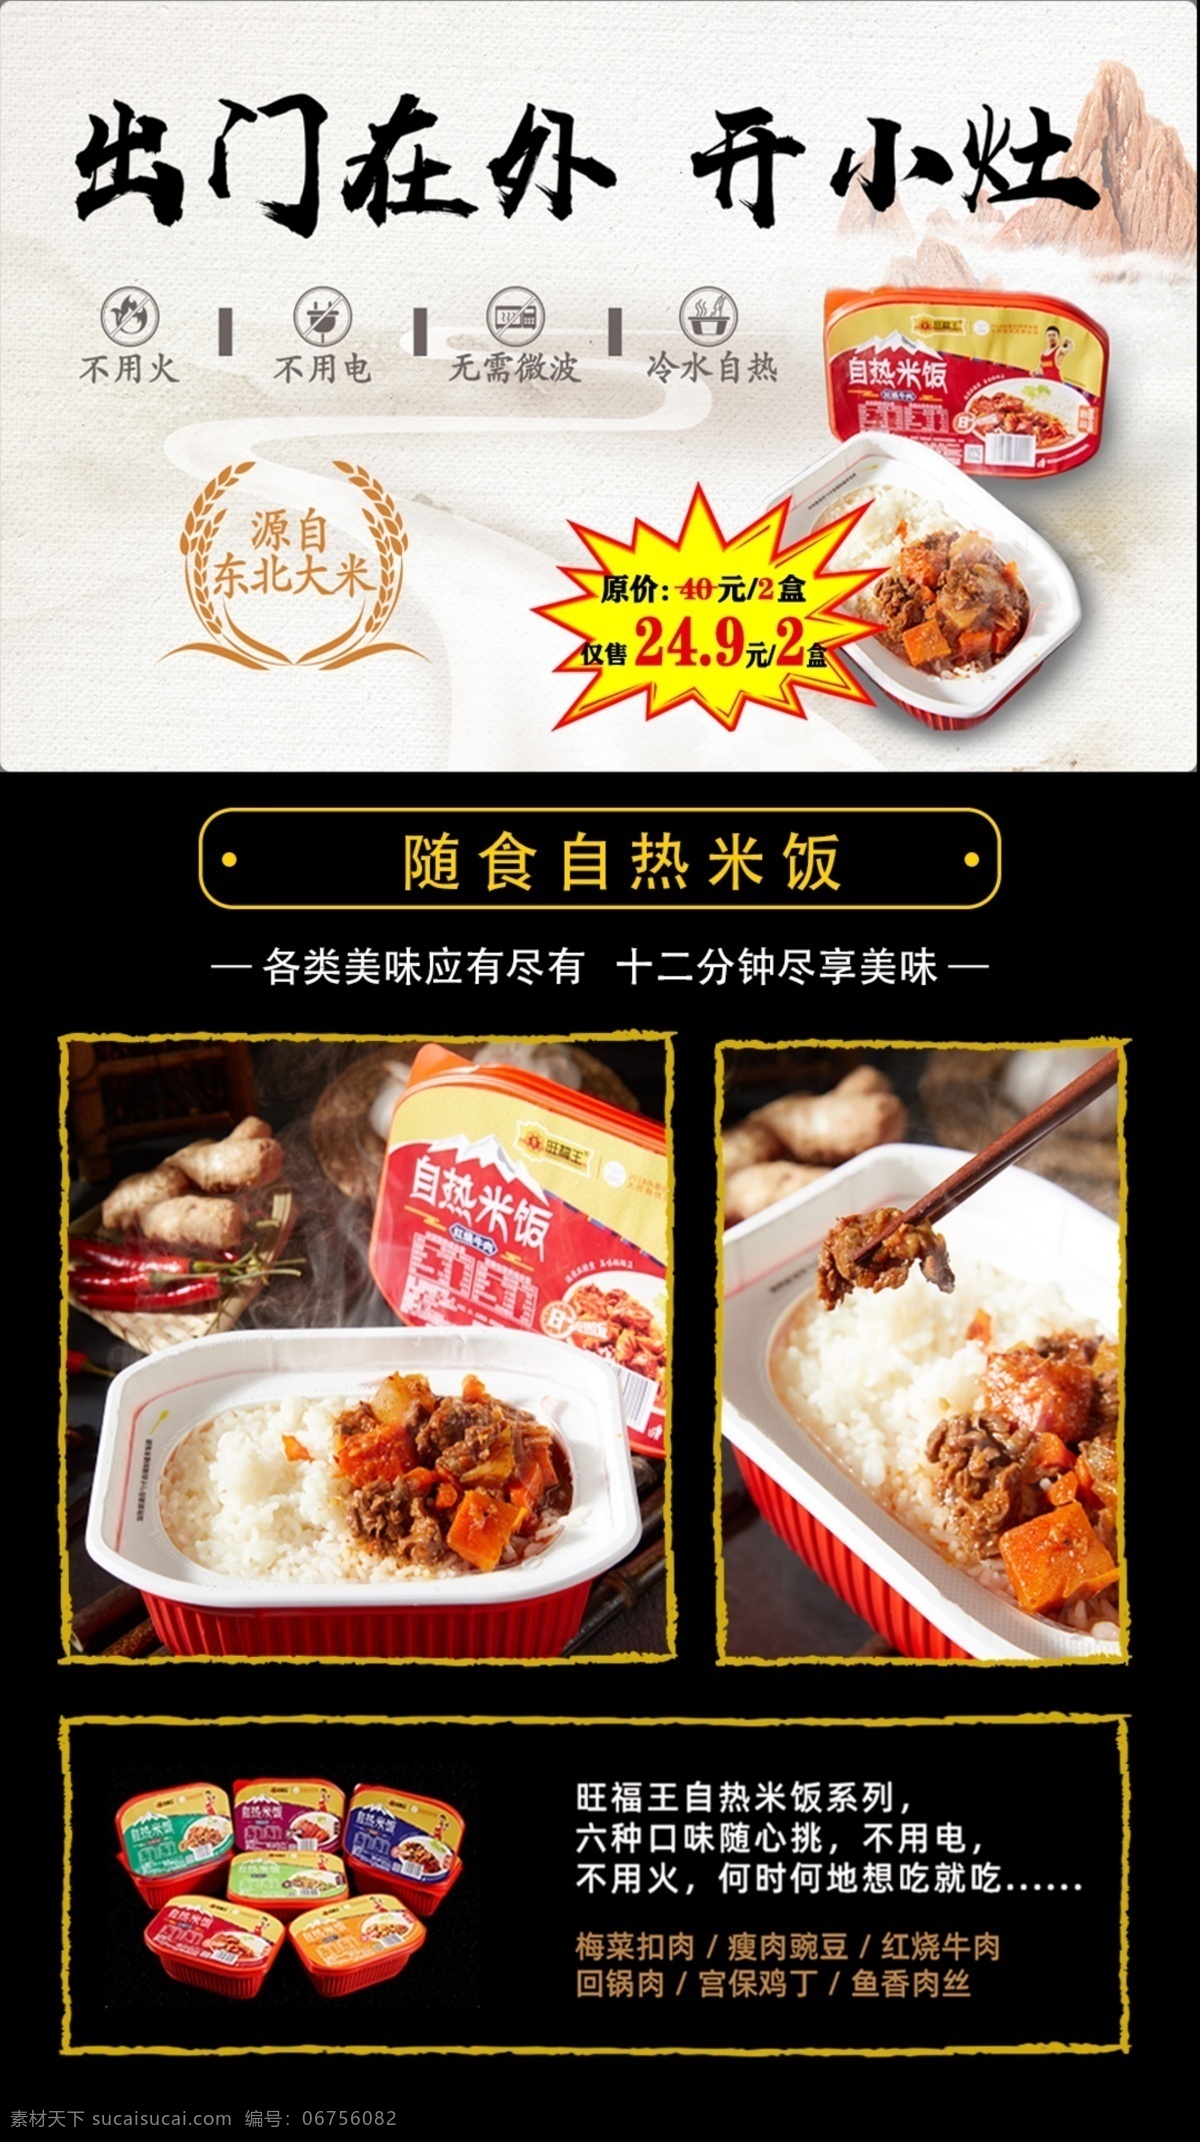 自热米饭 出门在外 开小灶 海报 米饭 多口味 自热 团购 团购宣传